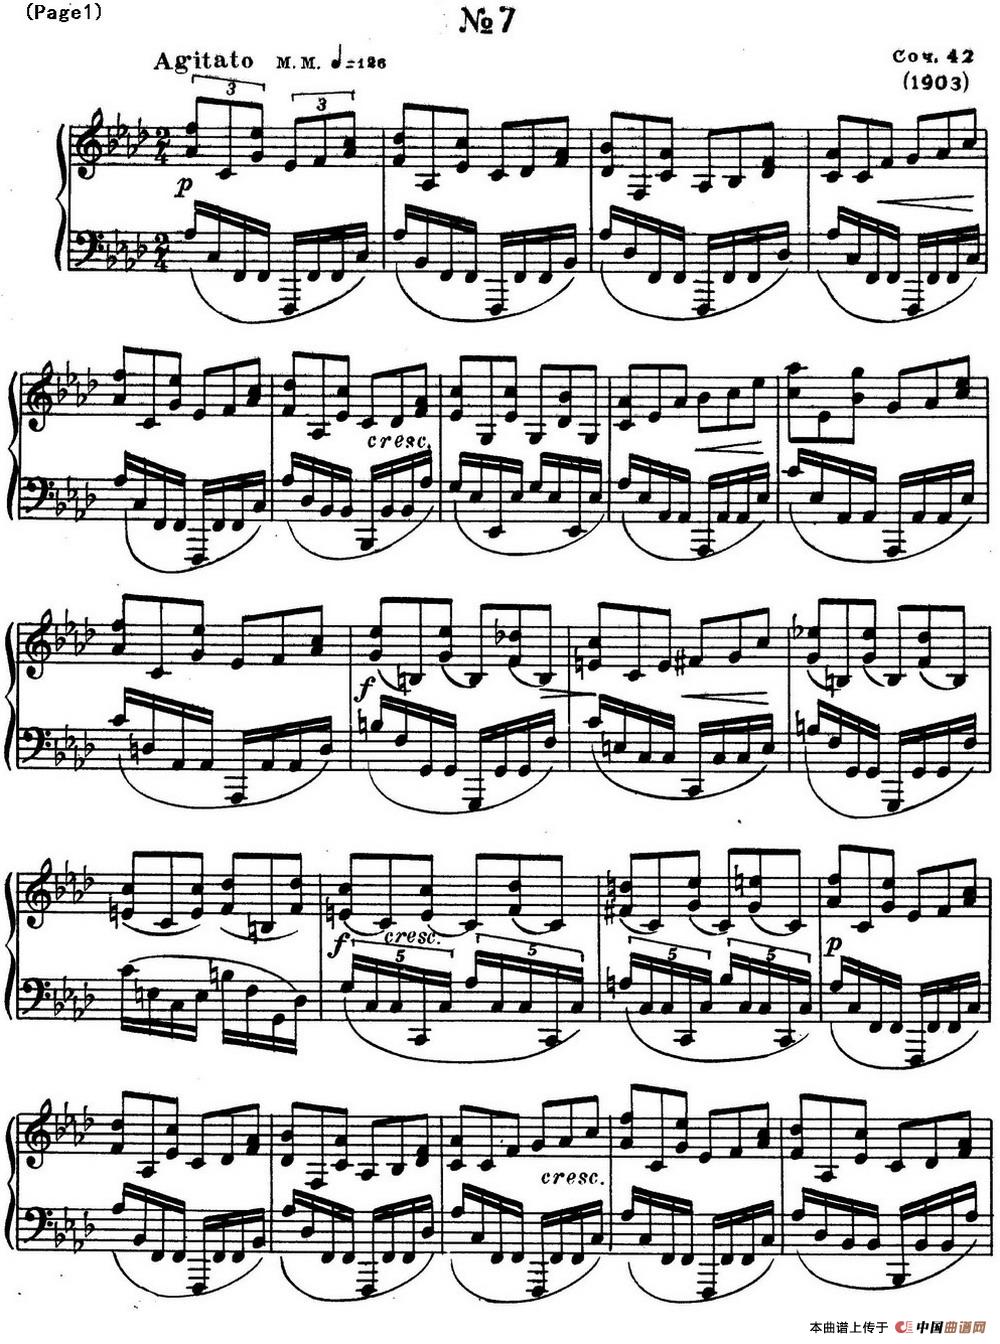 斯克里亚宾8首钢琴练习曲 Op42（No.7 Alexander Scriabin Etudes）(1)_Scriabin Etude Op.42 No.7_页面_1.jpg